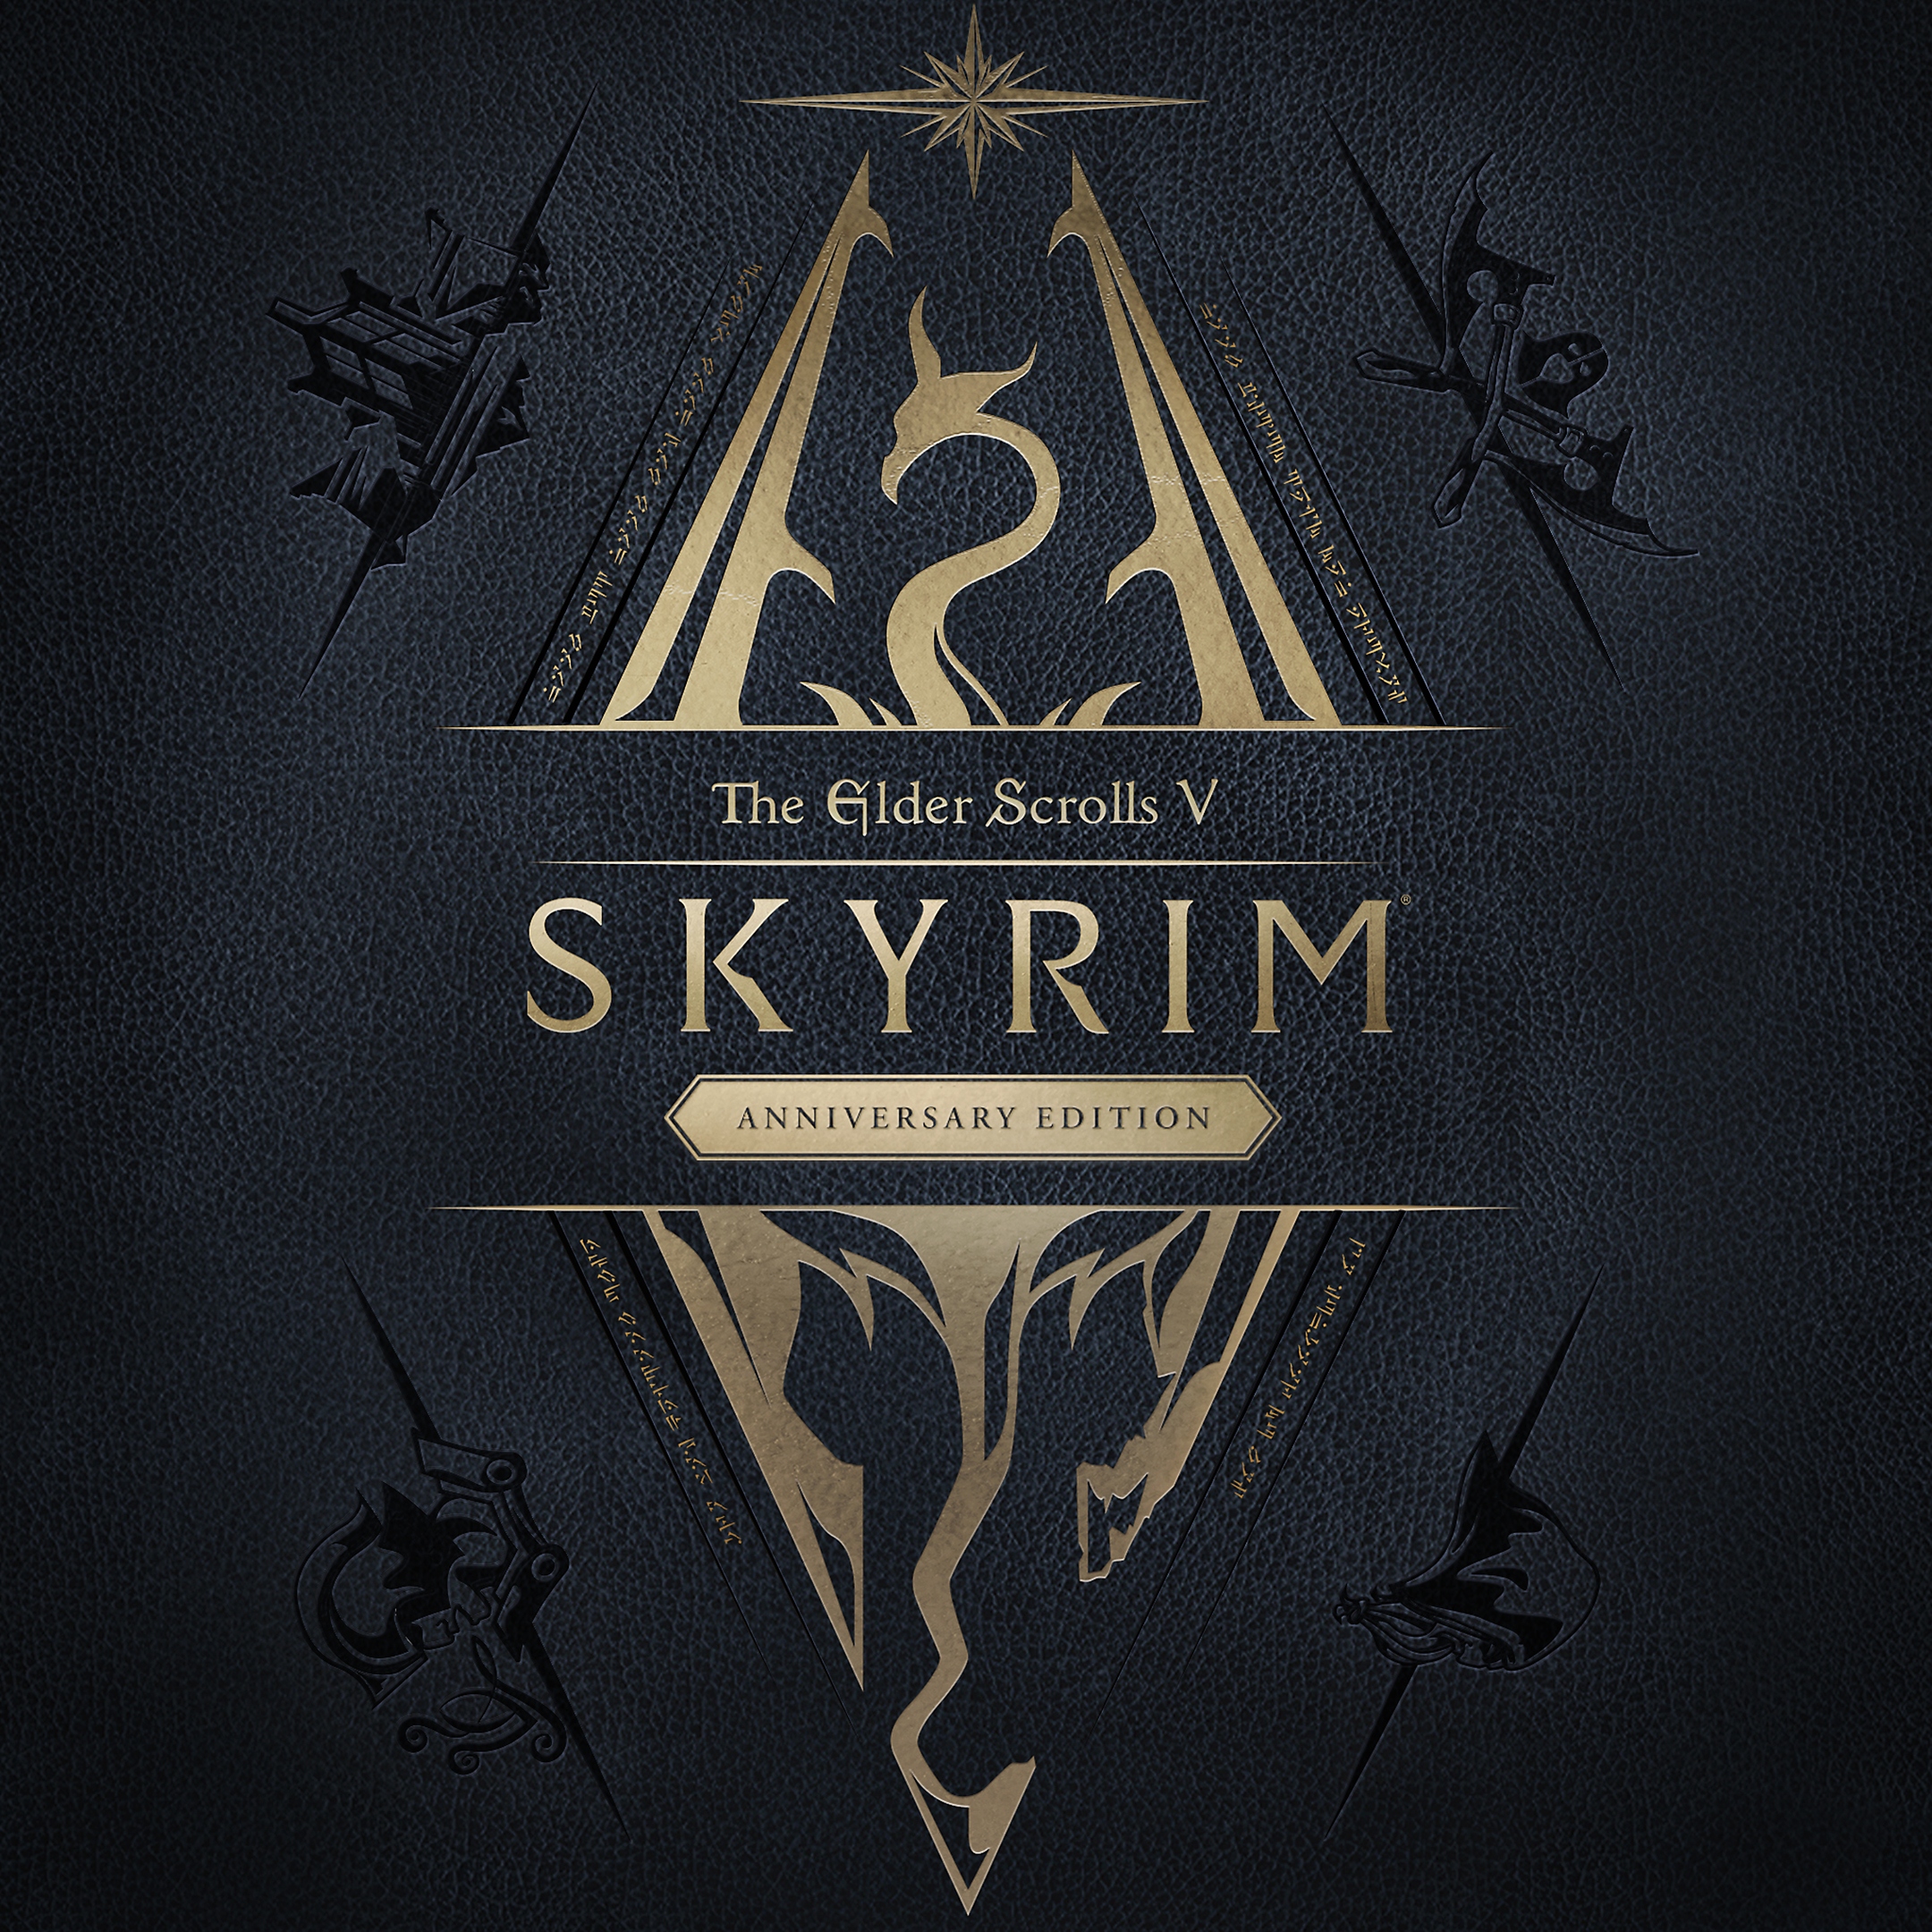 The Elder Scrolls V:Skyrim Anniversary Edition パックショット